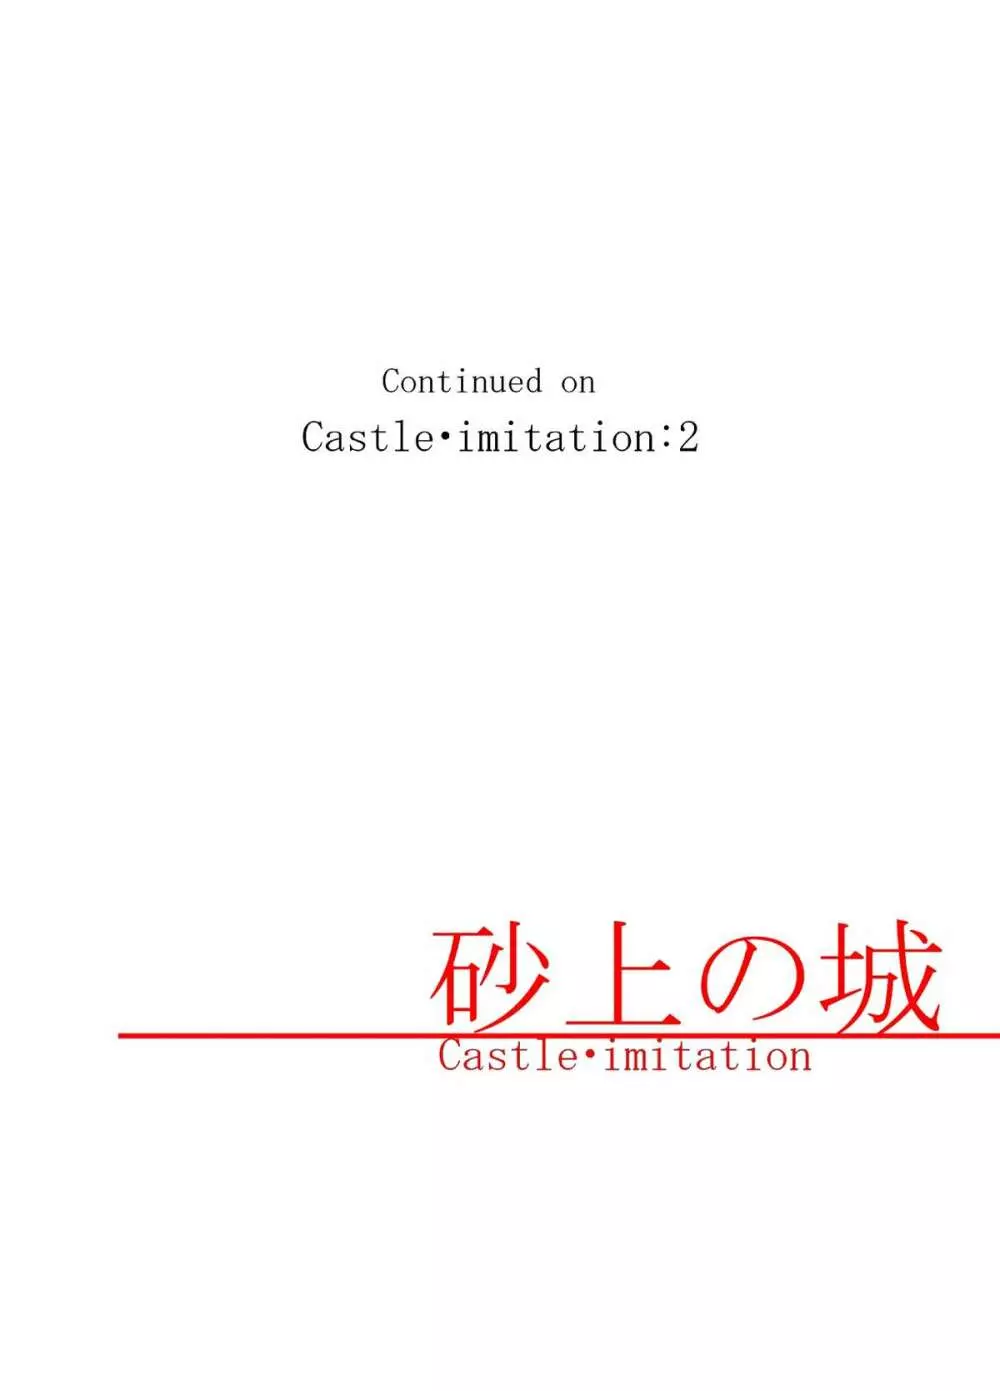 砂上の城/Castle・imitation 30ページ